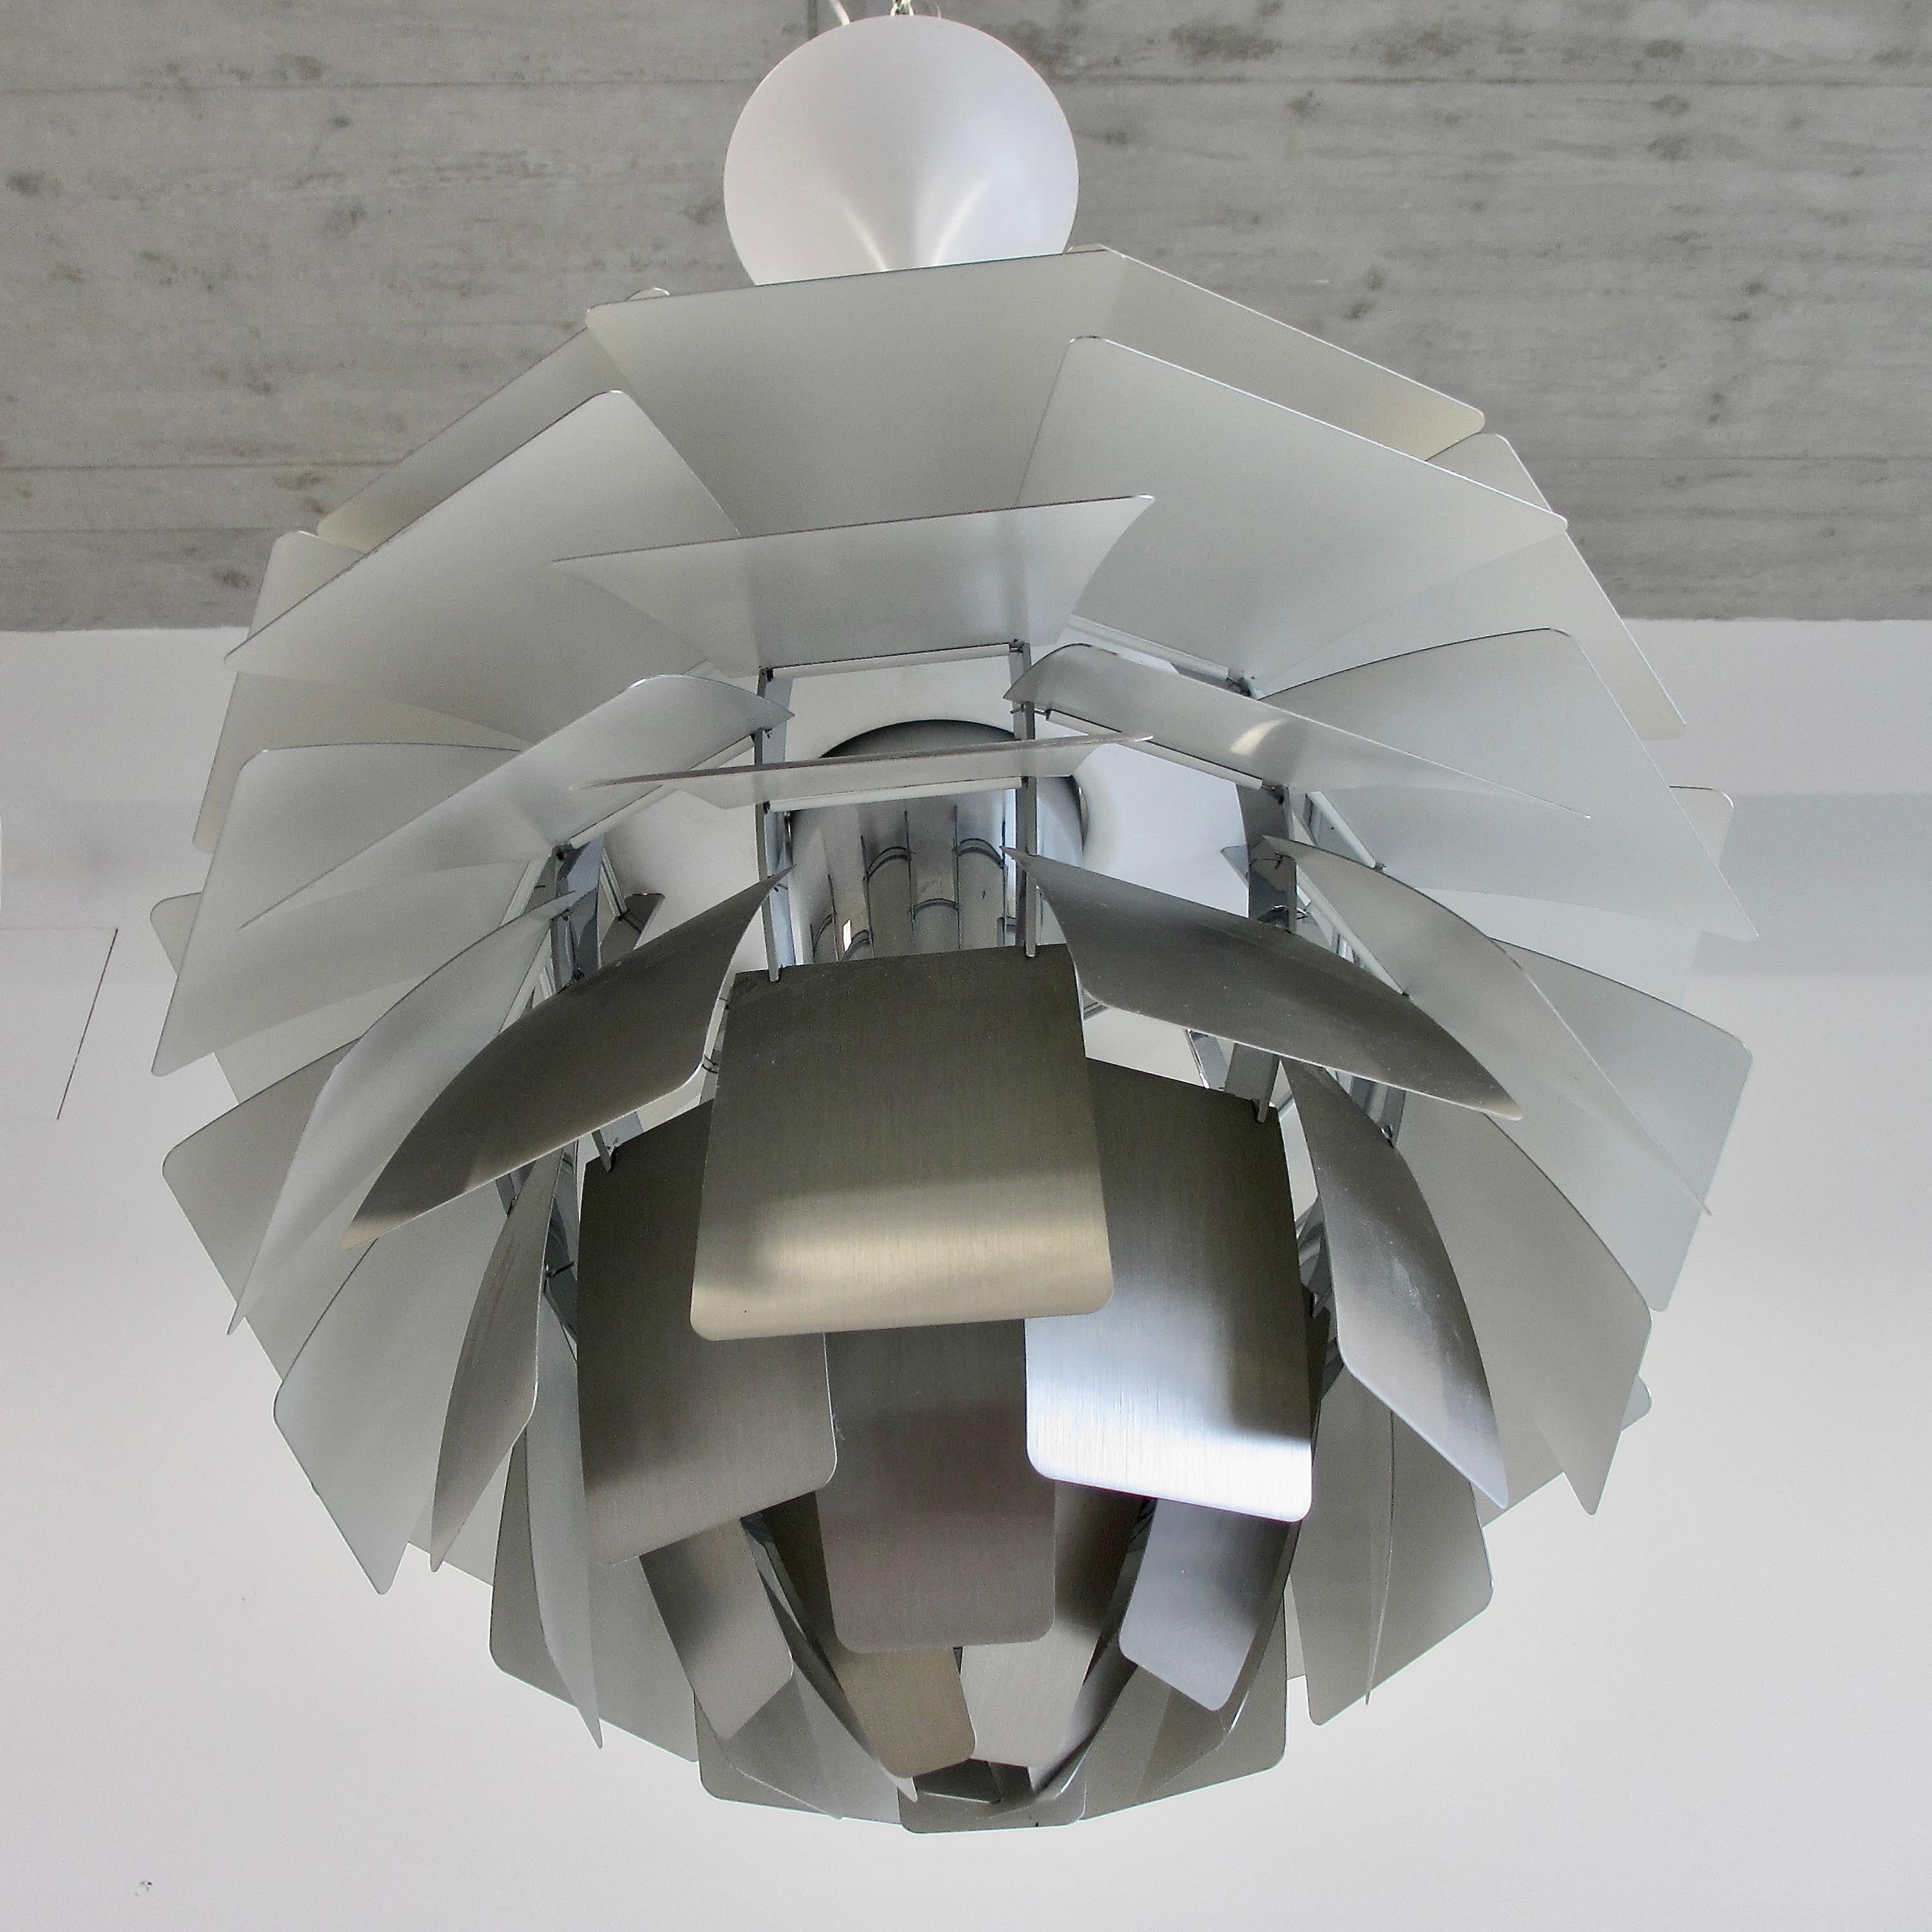 Pendelleuchte entworfen von Poul Henningsen. Dänemark, Louis Poulsen, 2012 (Mitte des 20. Jahrhunderts)